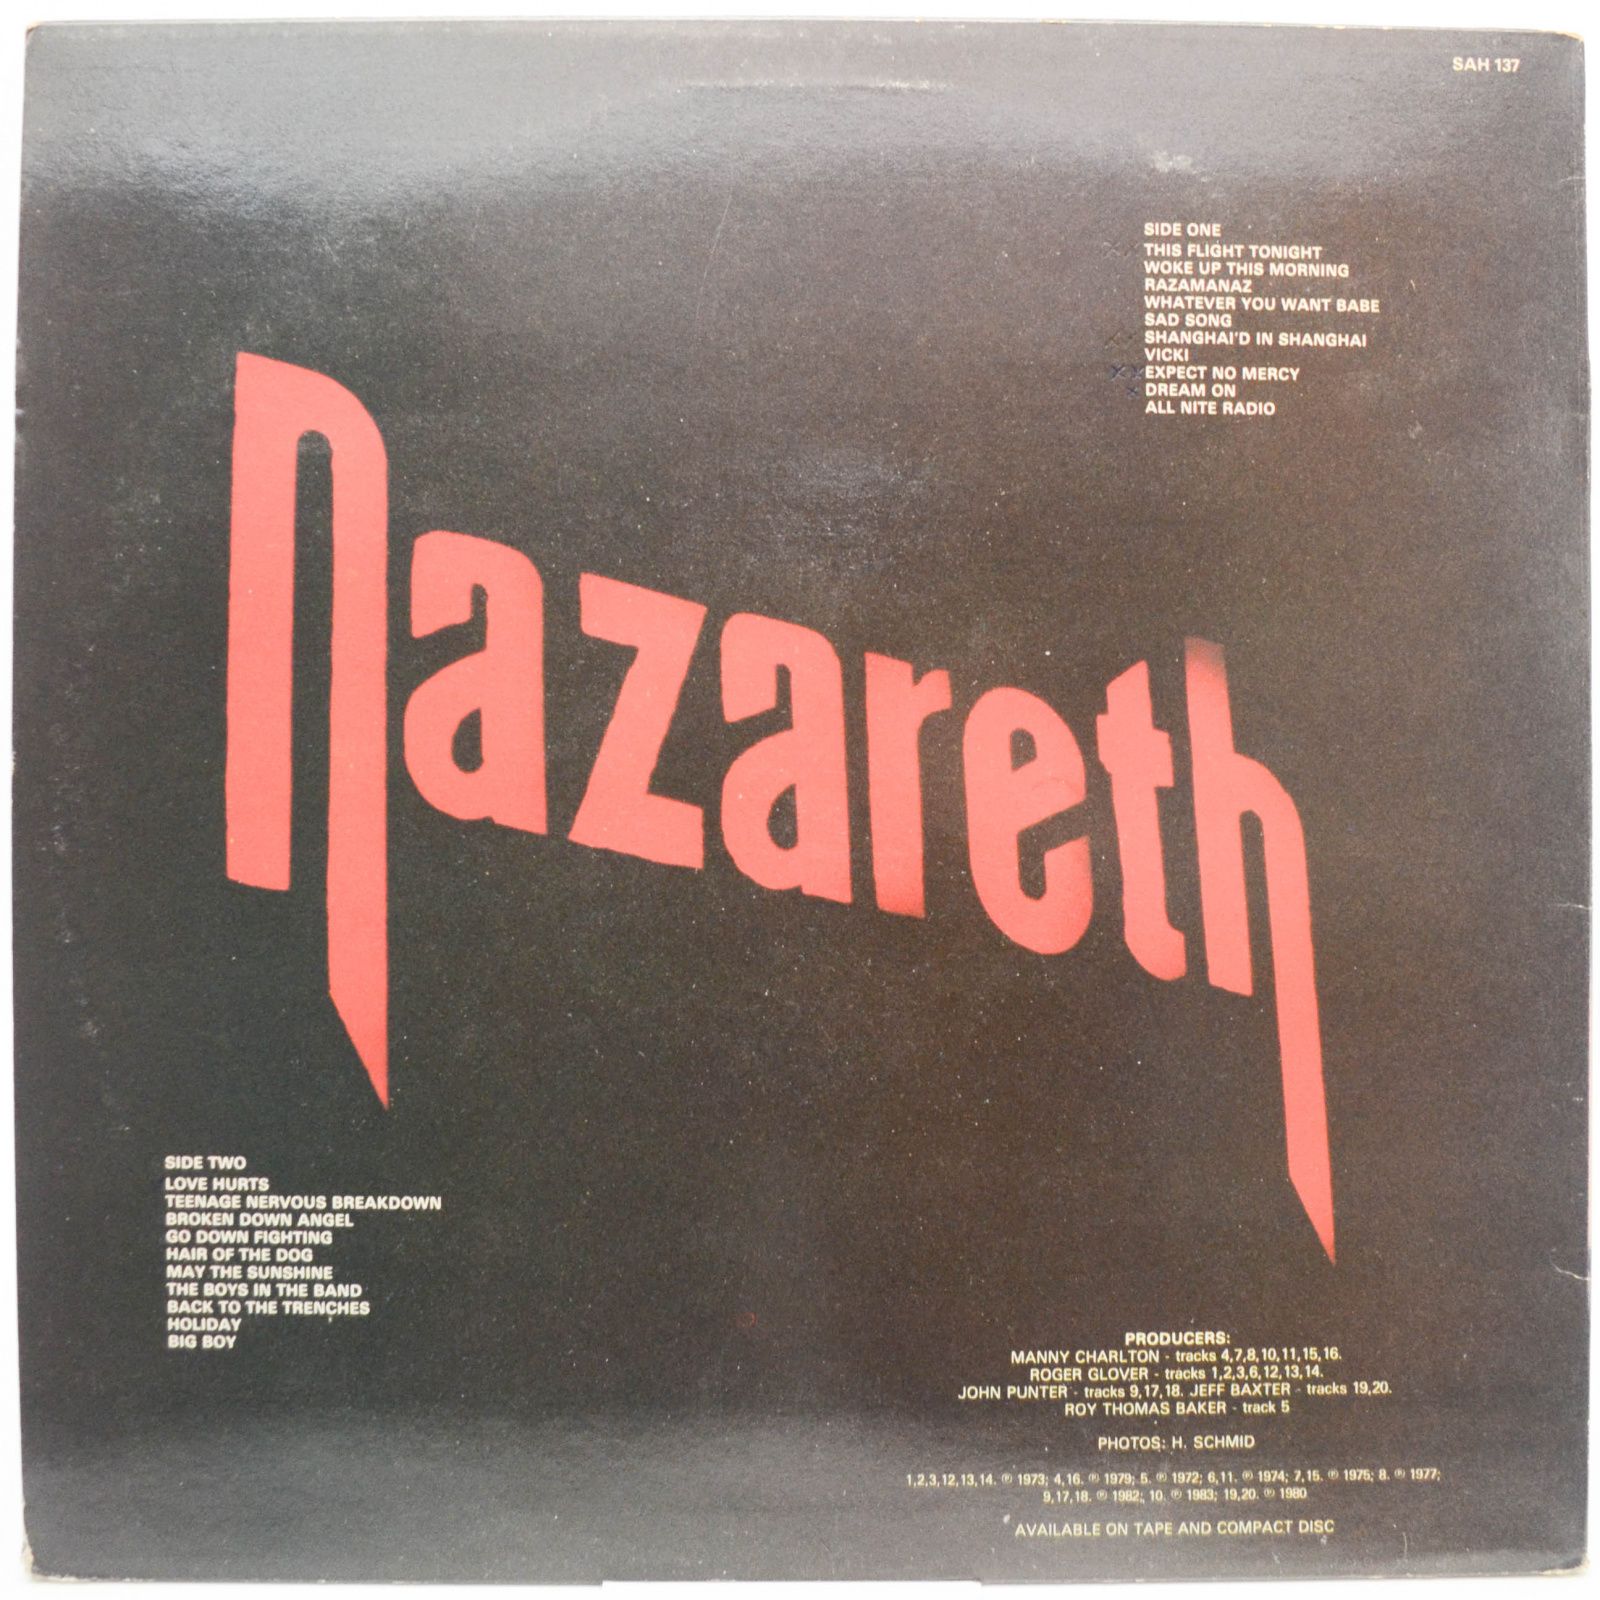 Nazareth — 20 Greatest (UK), 1985